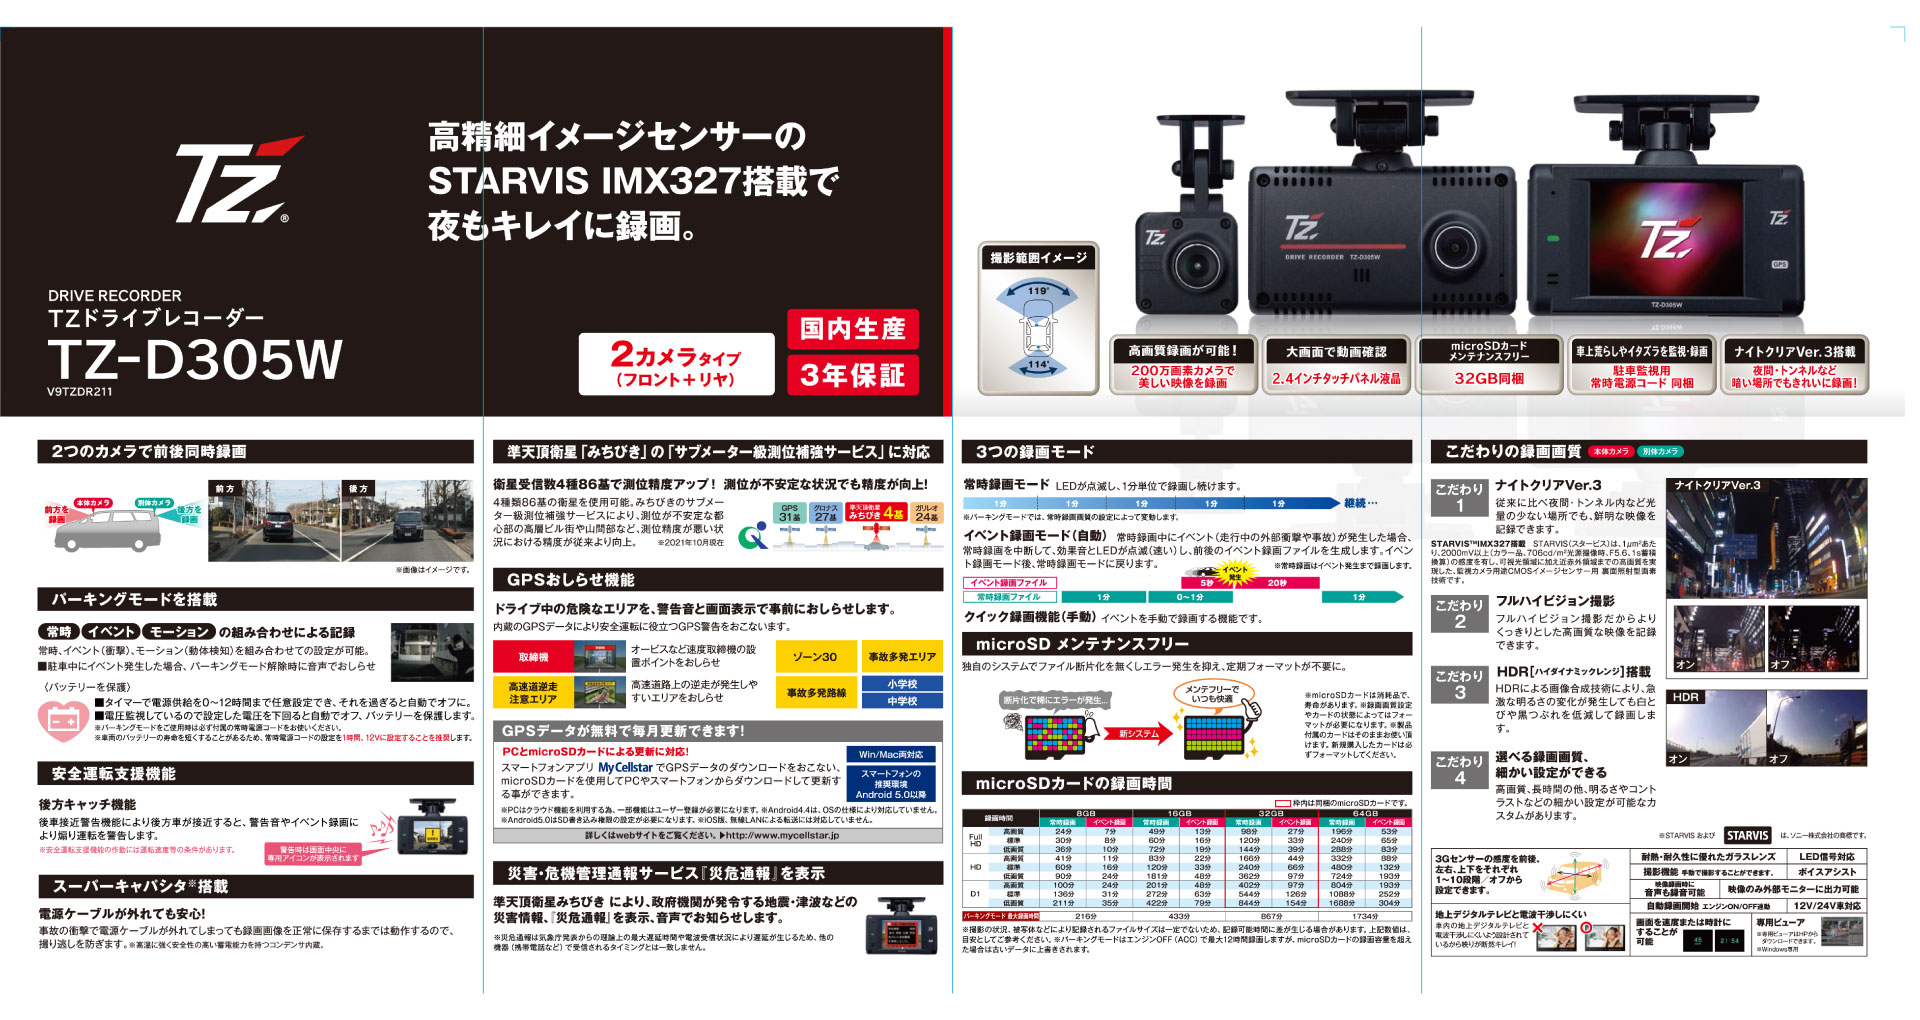 TZ-DR305Wカタログ | トヨタカローラ滋賀